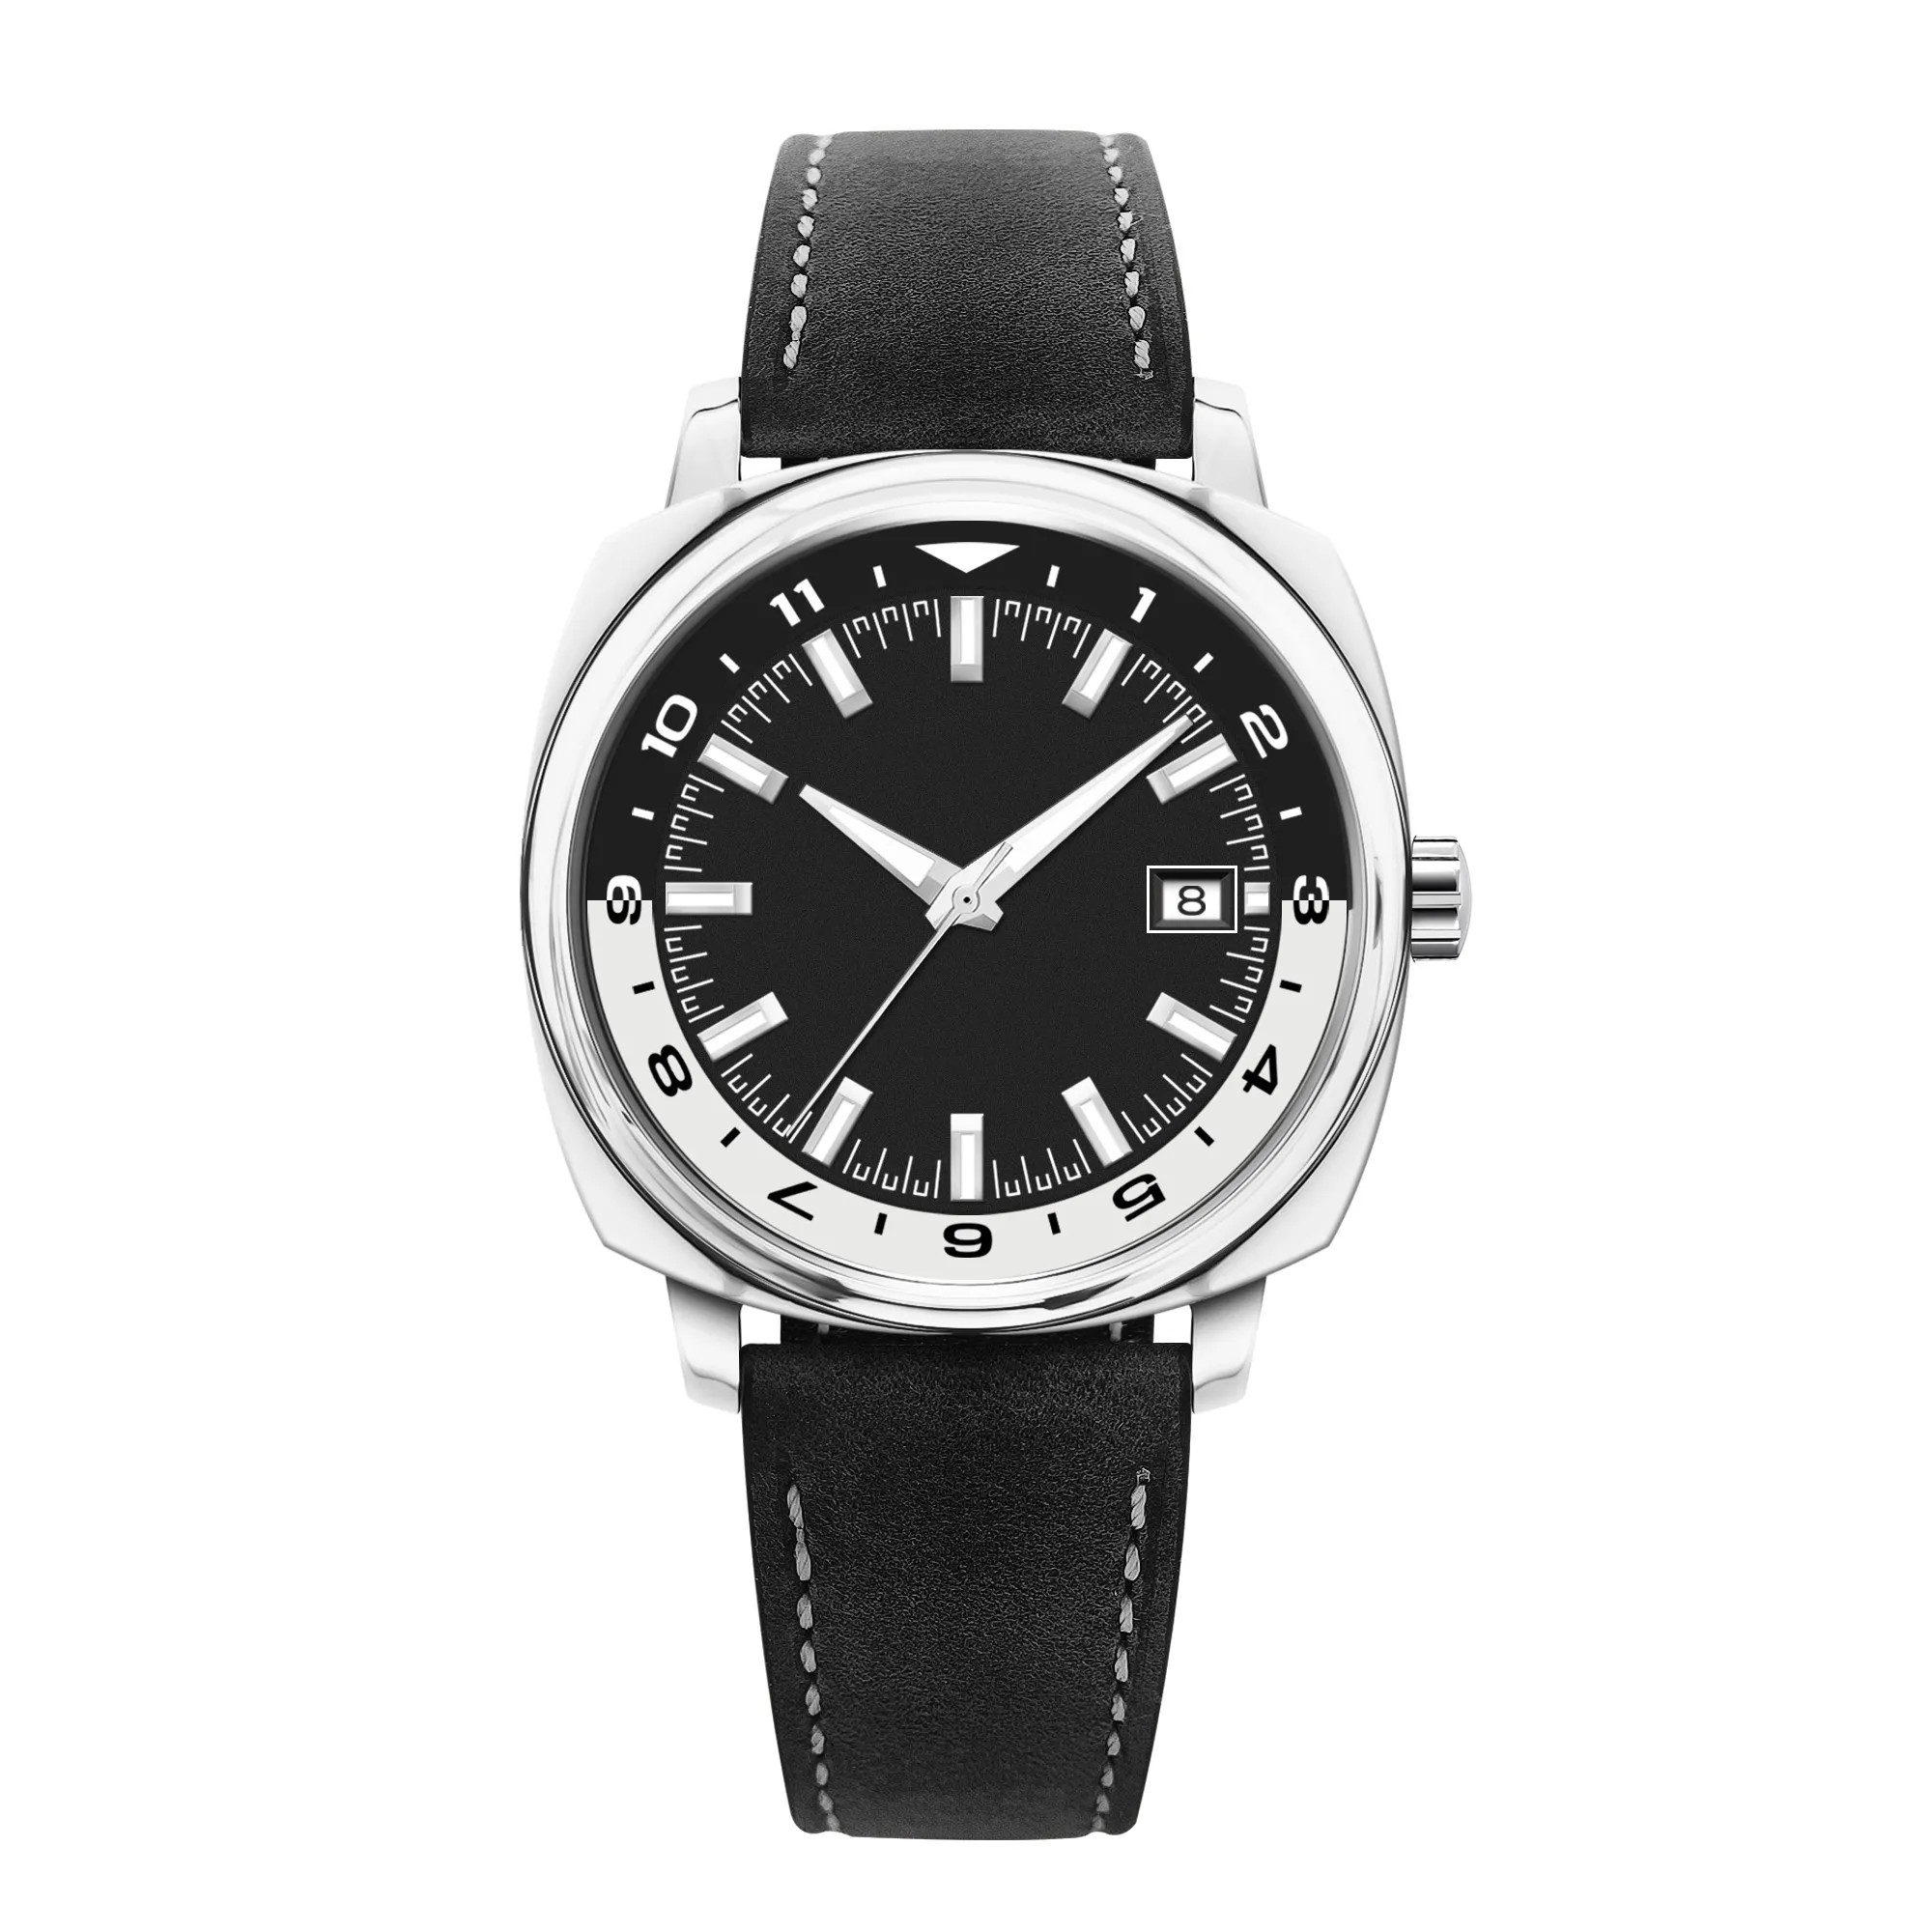 Jam tangan pria 42mm NH35, arloji kulit tanggal selam tahan air petualang dengan logo kustom mekanis otomatis